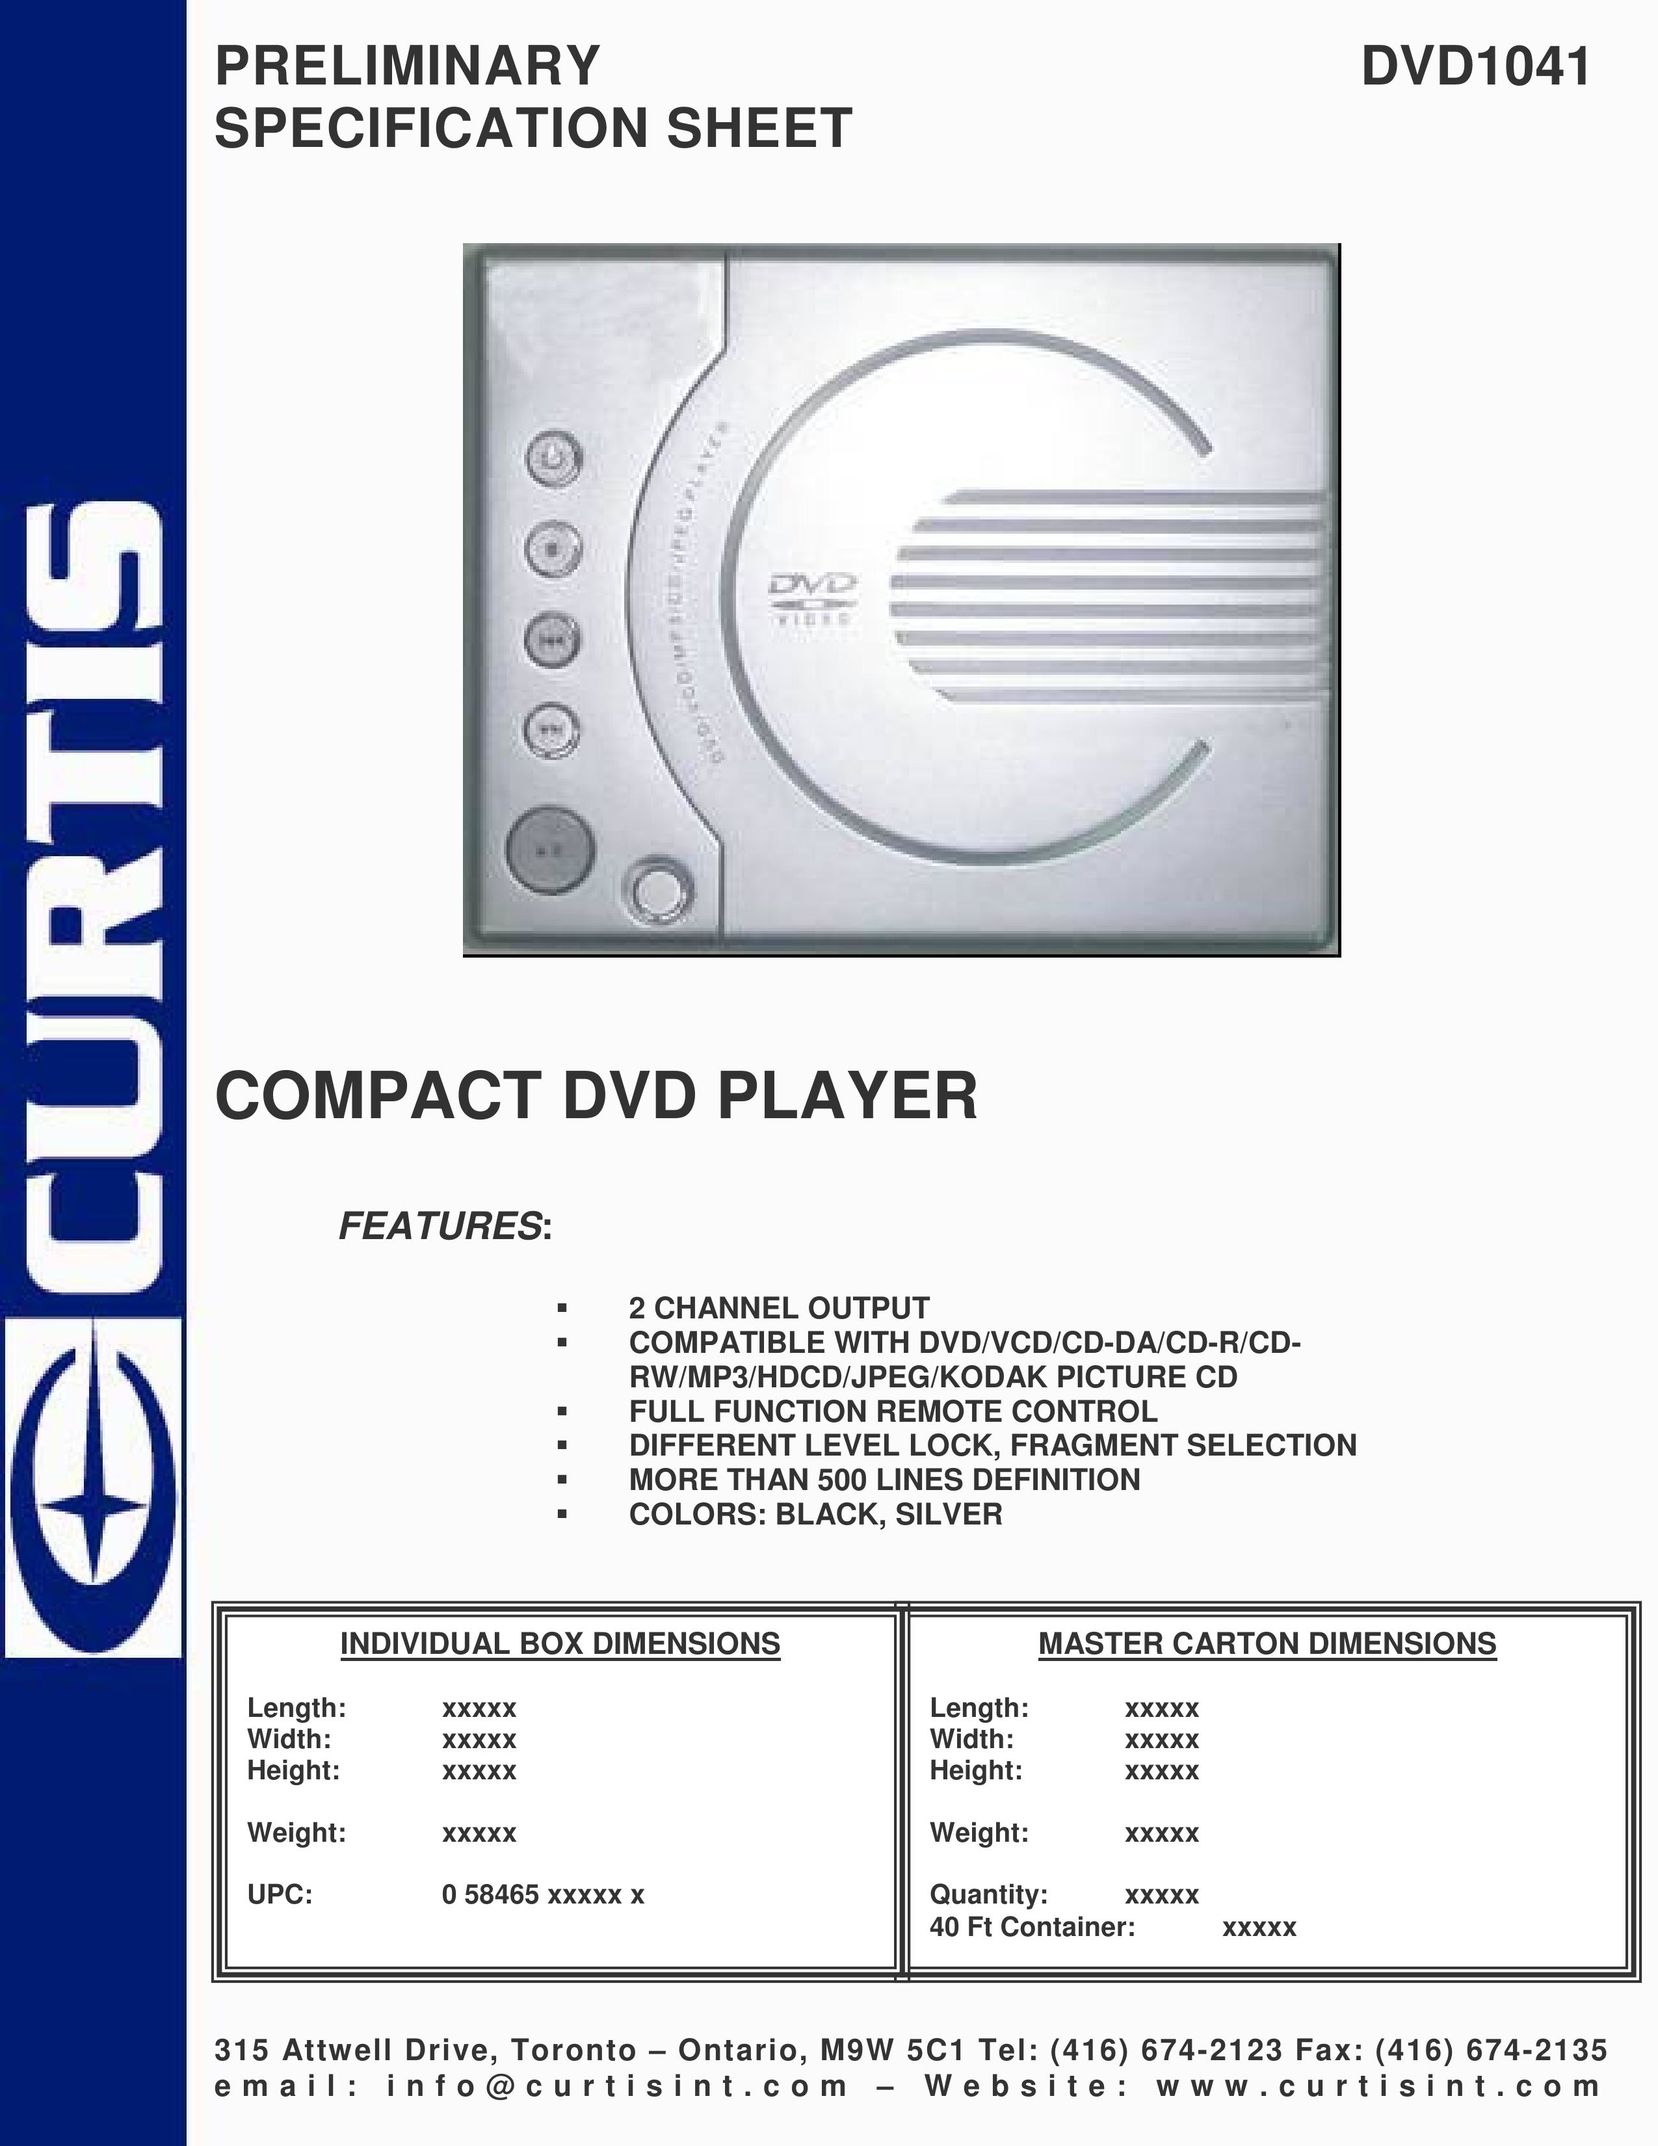 Curtis DVD1041 DVD Player User Manual